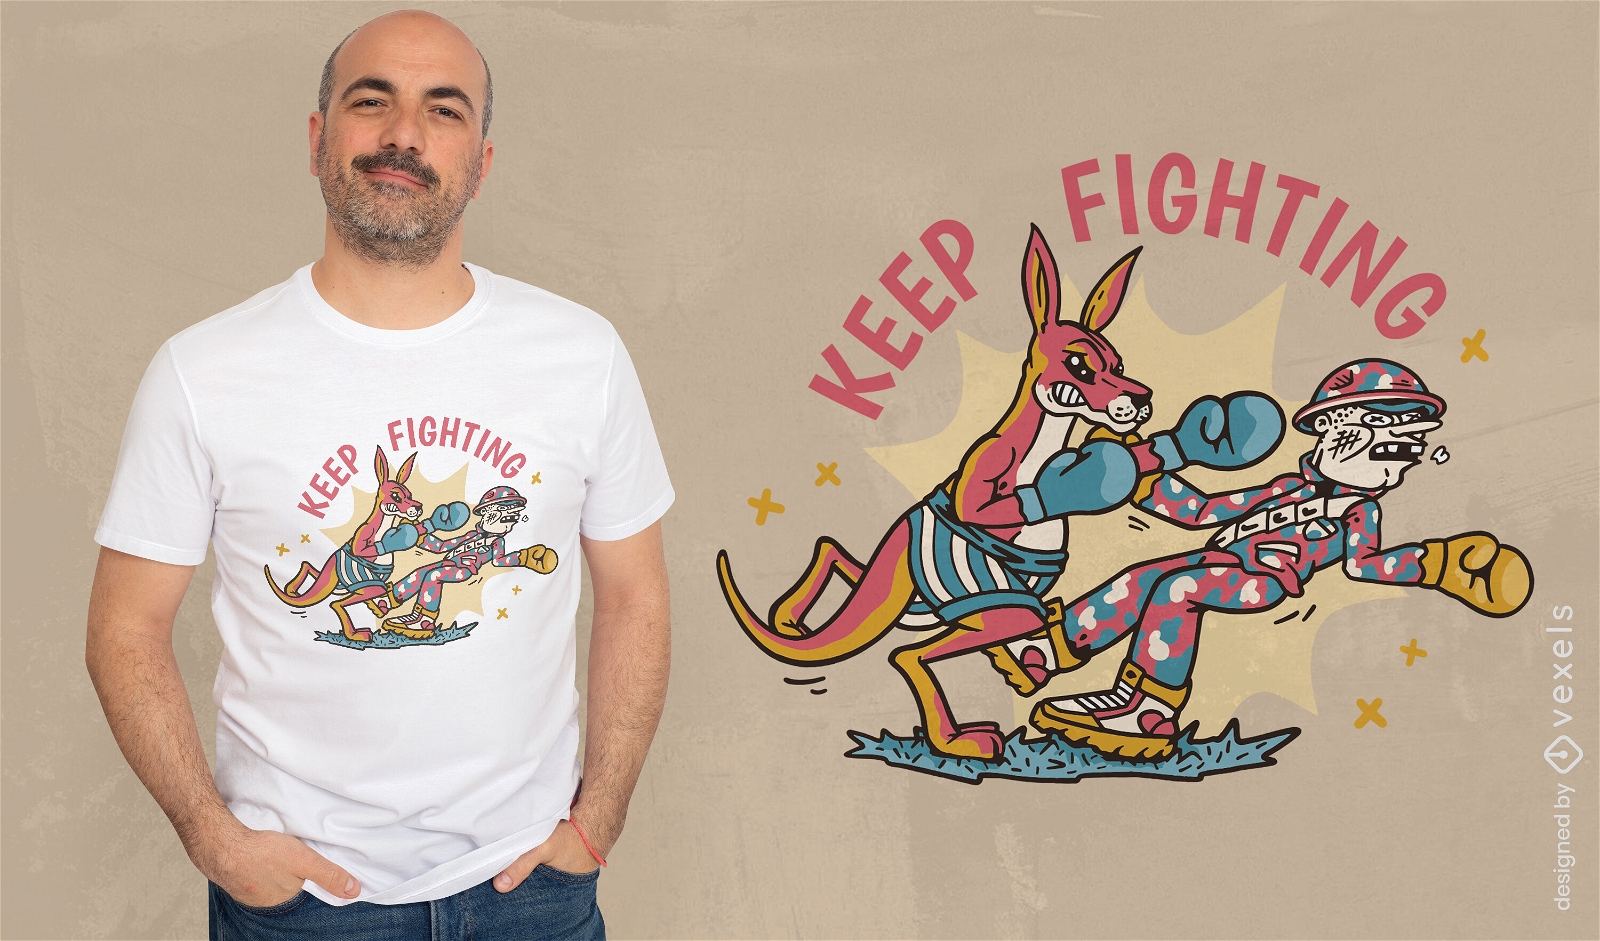 Boxing kangaroo fighting t-shirt design